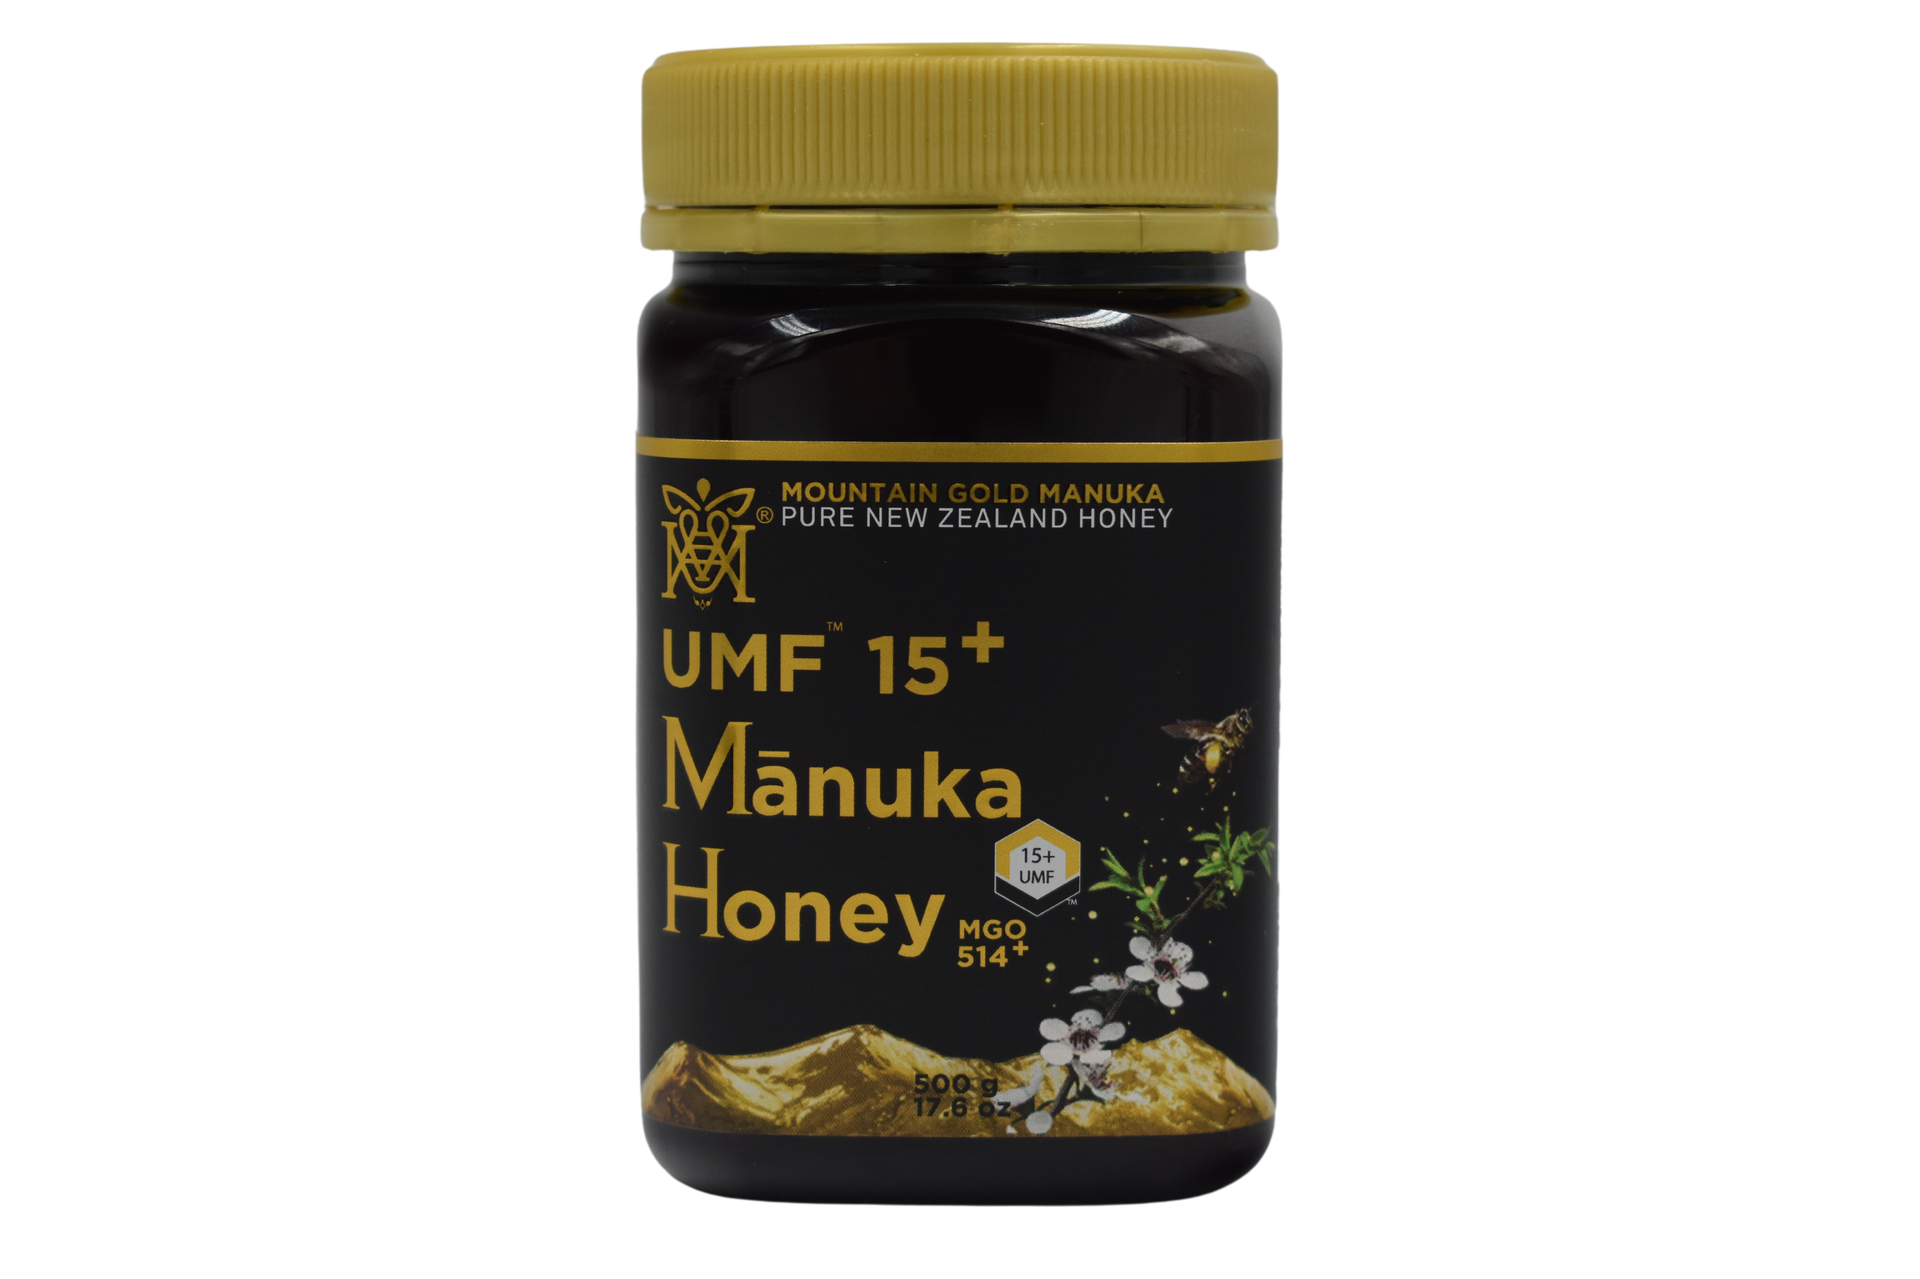 Mountain Gold Manuka Honey UMF15+ / MGO 514 500g